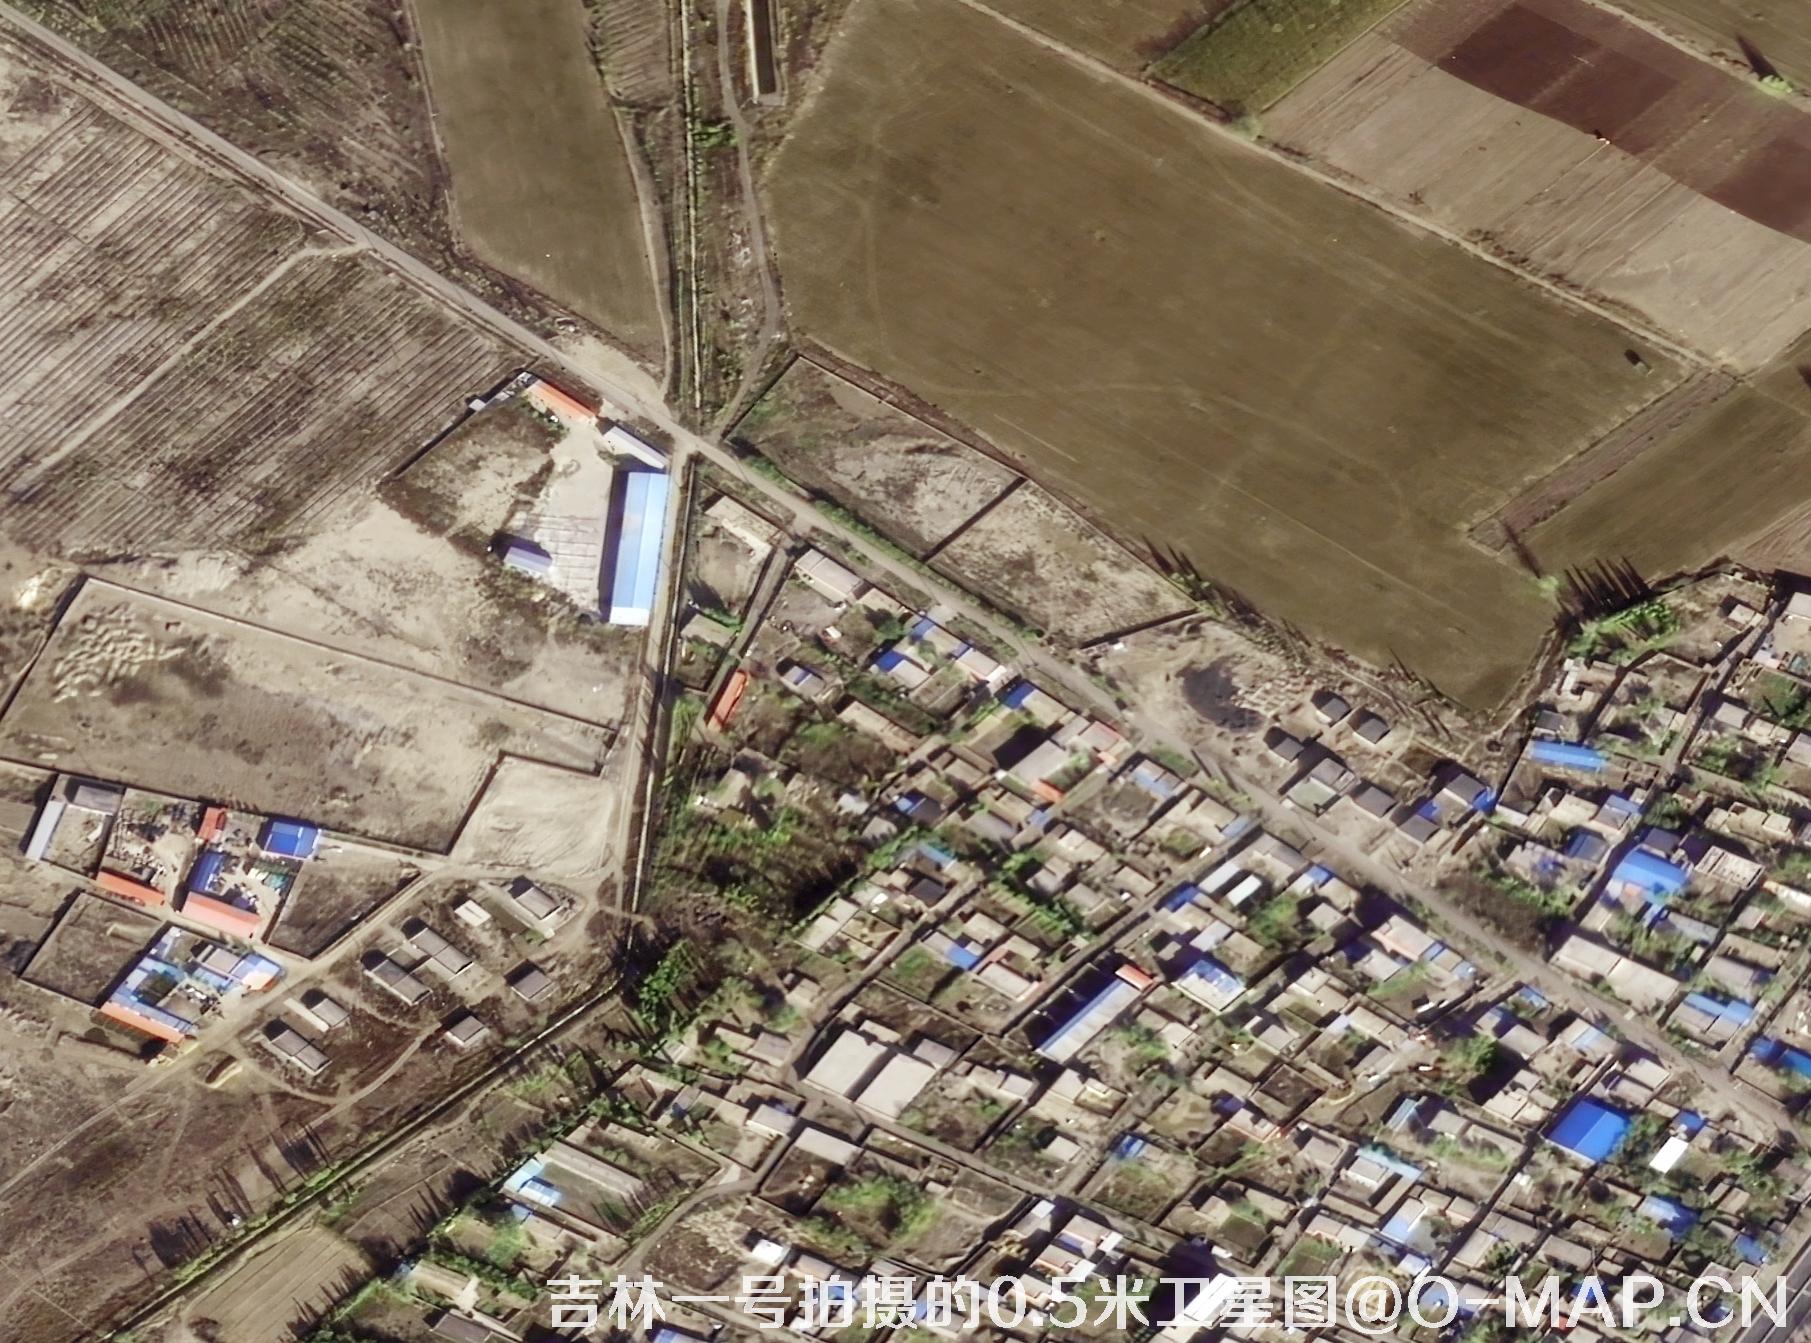 吉林一号拍摄的0.5米农村房屋卫星图